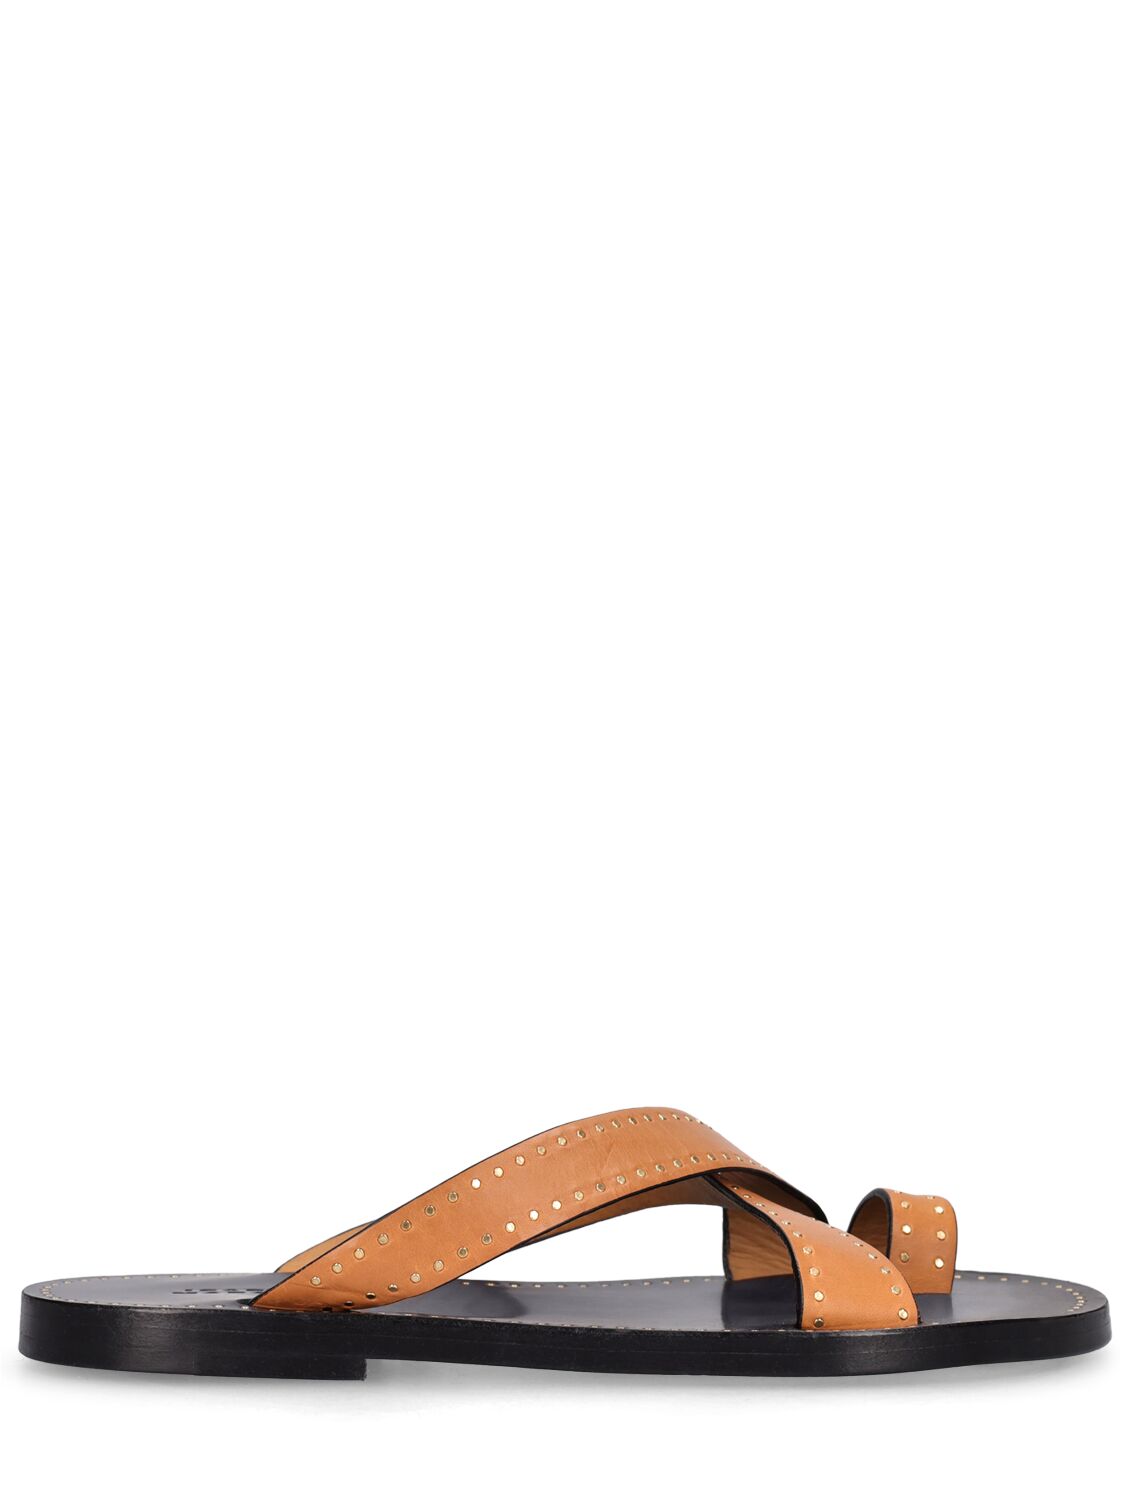 Isabel Marant Embellished Leather Thong Sandals In Natural